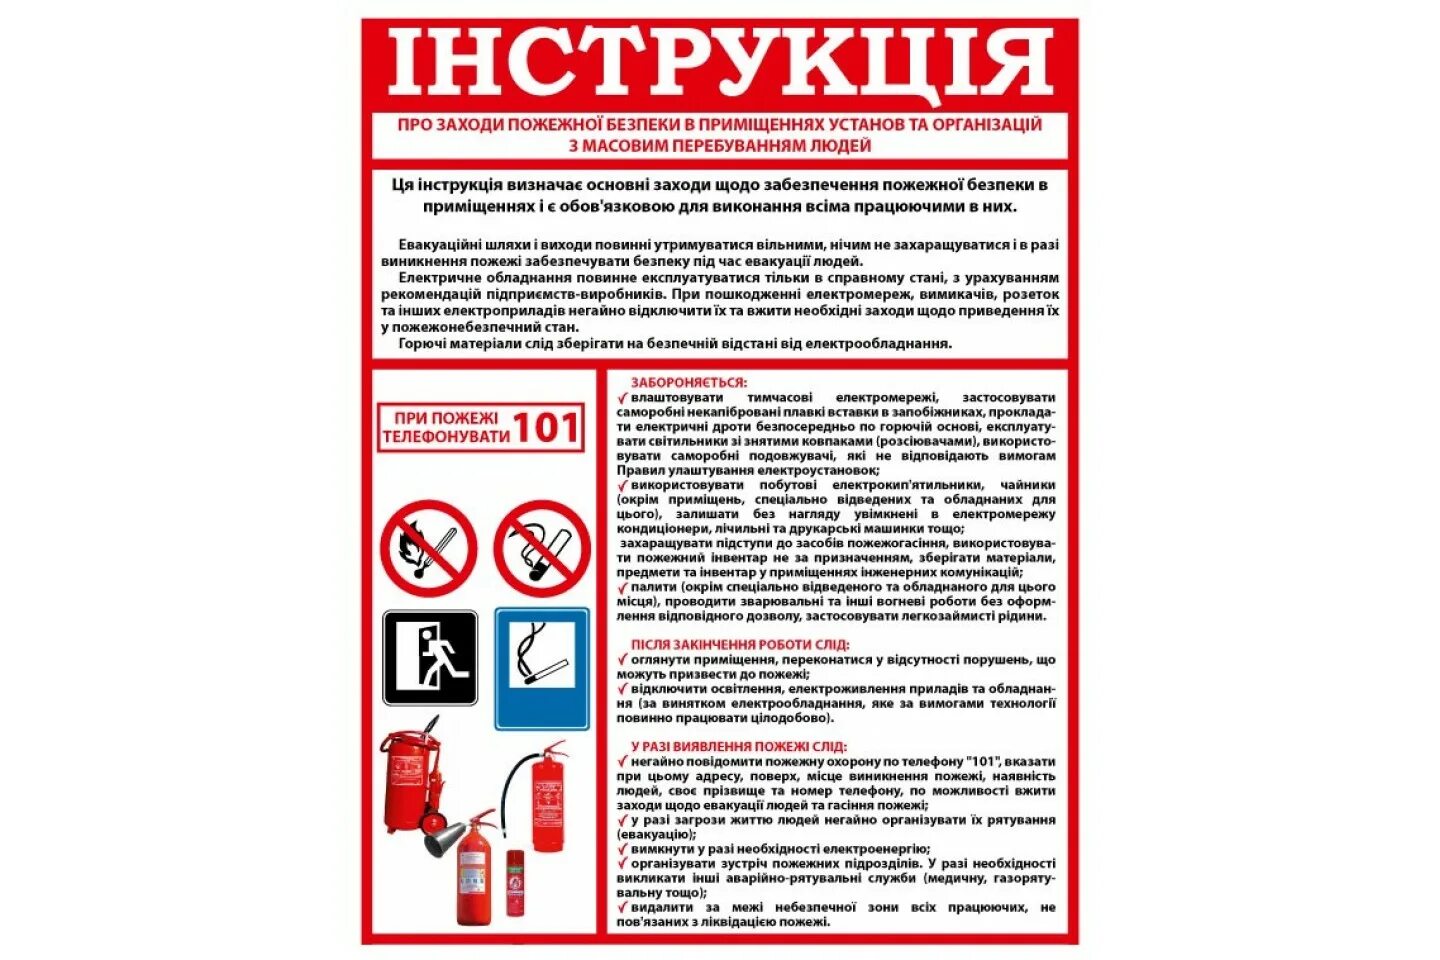 Пожарная безопасность в казахстане. Инструкция по мерам пожарной безопасности. Инструкция о мерах пожарной безопасности. Инструктаж о мерах противопожарной безопасности. Инструкция противопожарной безопасности.